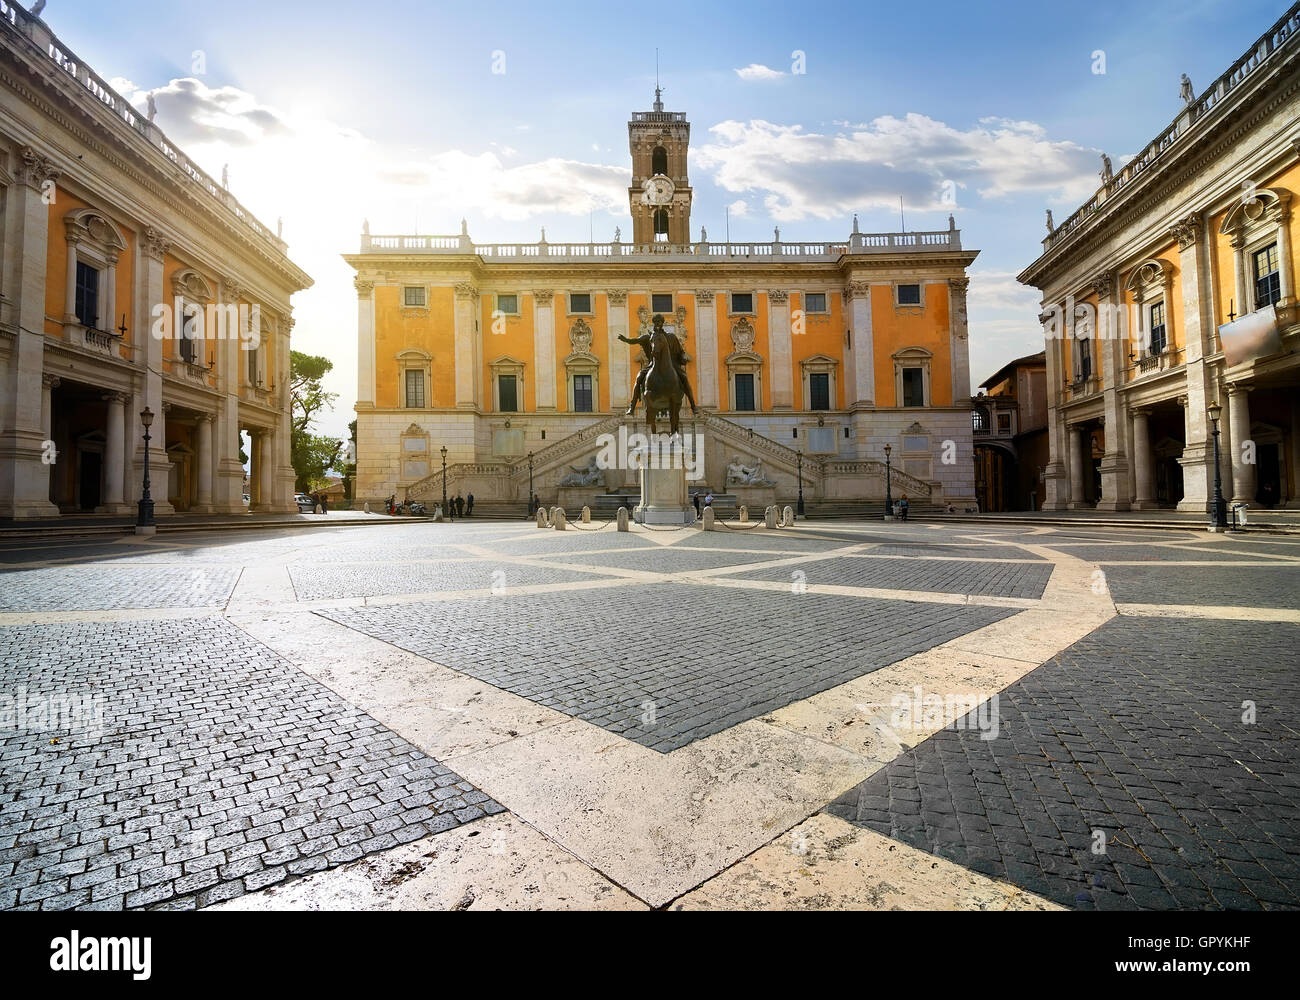 Piazza del Campidoglio am Kapitol, Rom, Italien Stockfoto